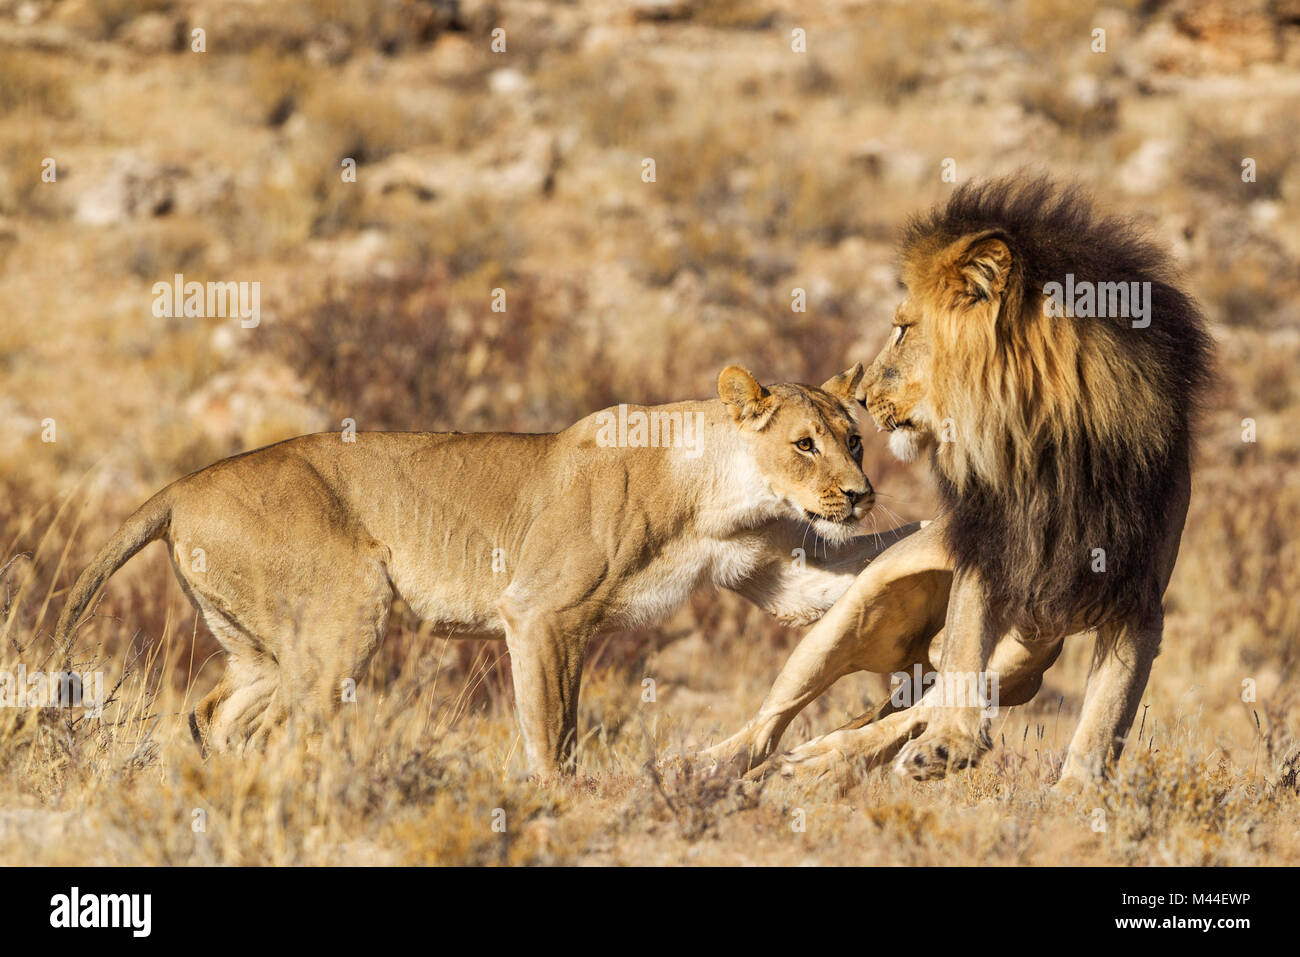 L'African Lion (Panthera leo). Femme en chaleur et du Kalahari à crinière noire homme à leur première rencontre. L'homme a peur de l'agressivité à l'origine de la femelle. Désert du Kalahari, Kgalagadi Transfrontier Park, Afrique du Sud. Banque D'Images